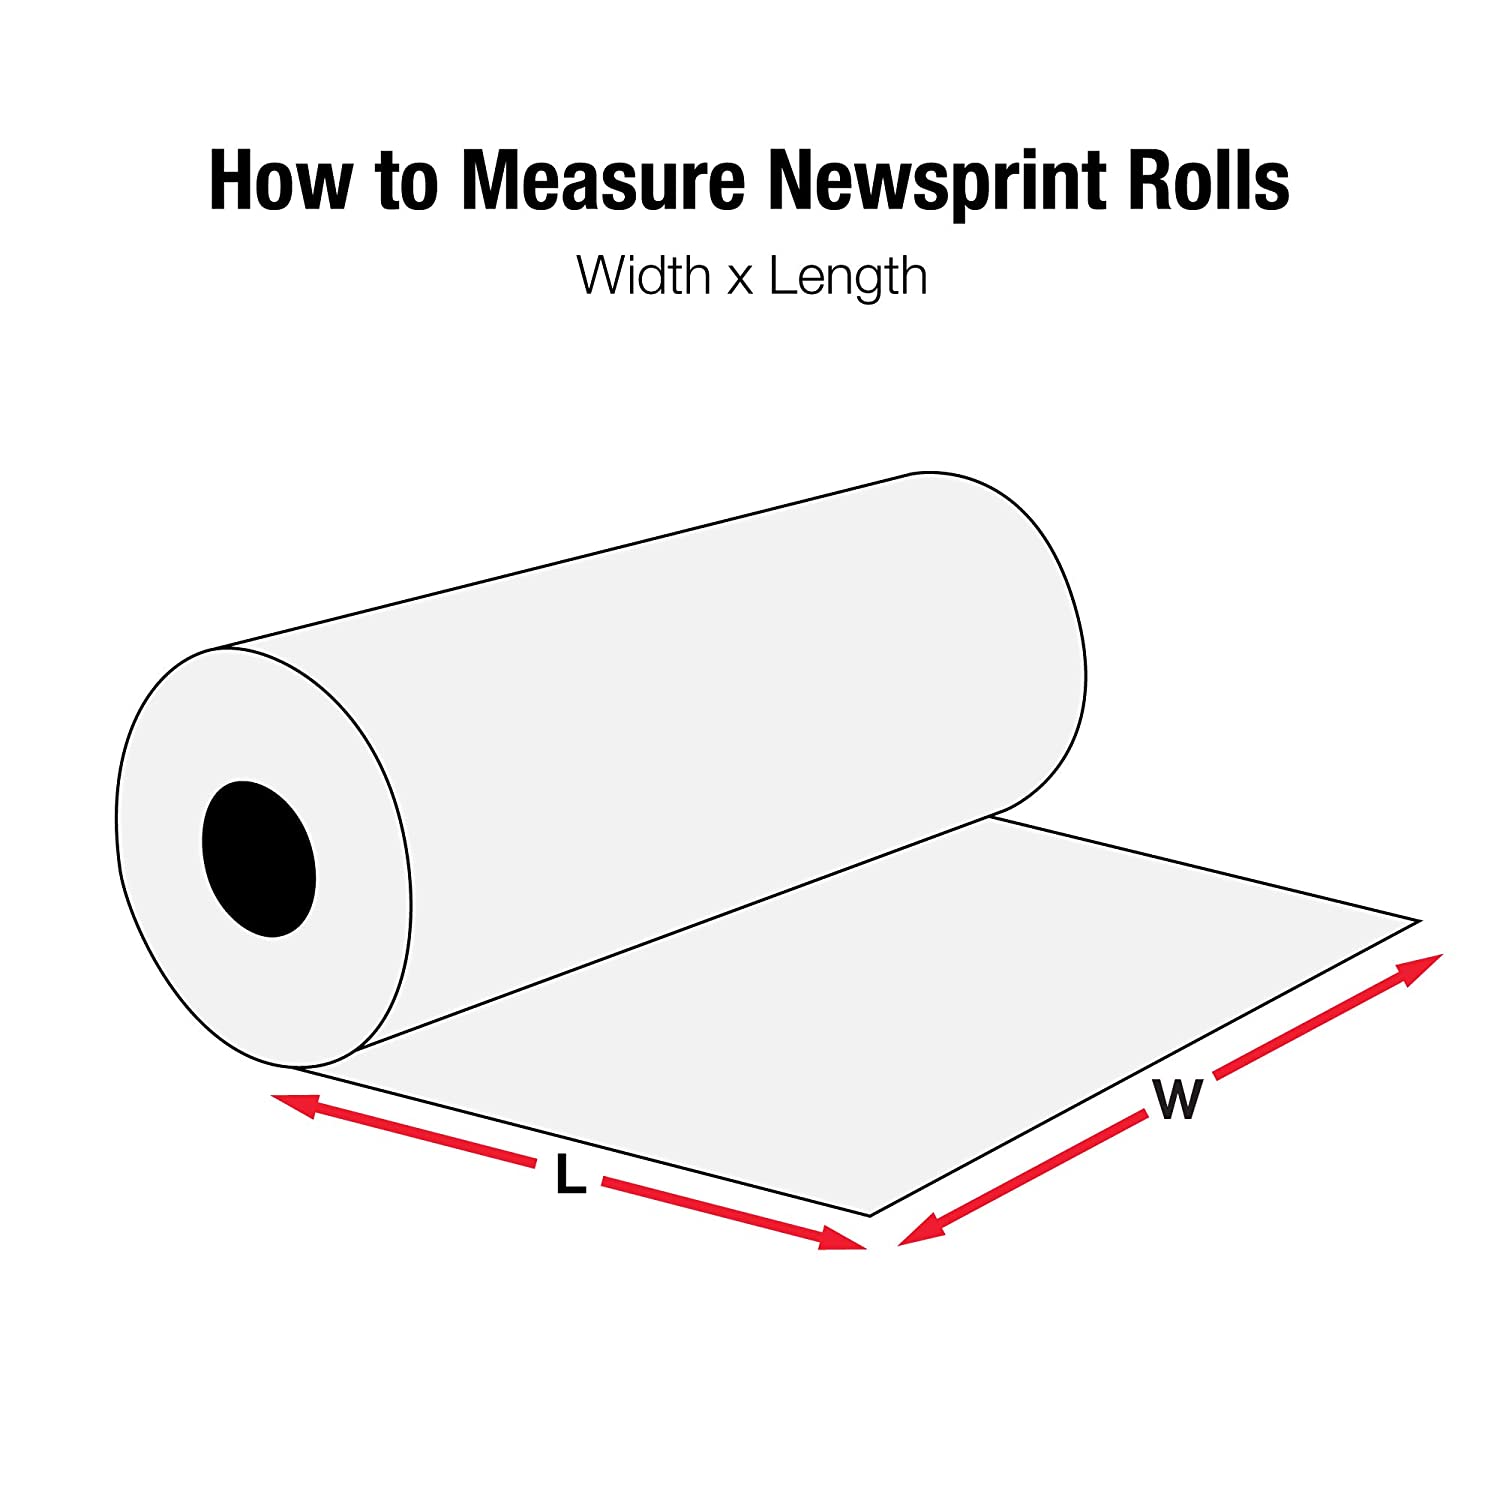 Newsprint, Rolls